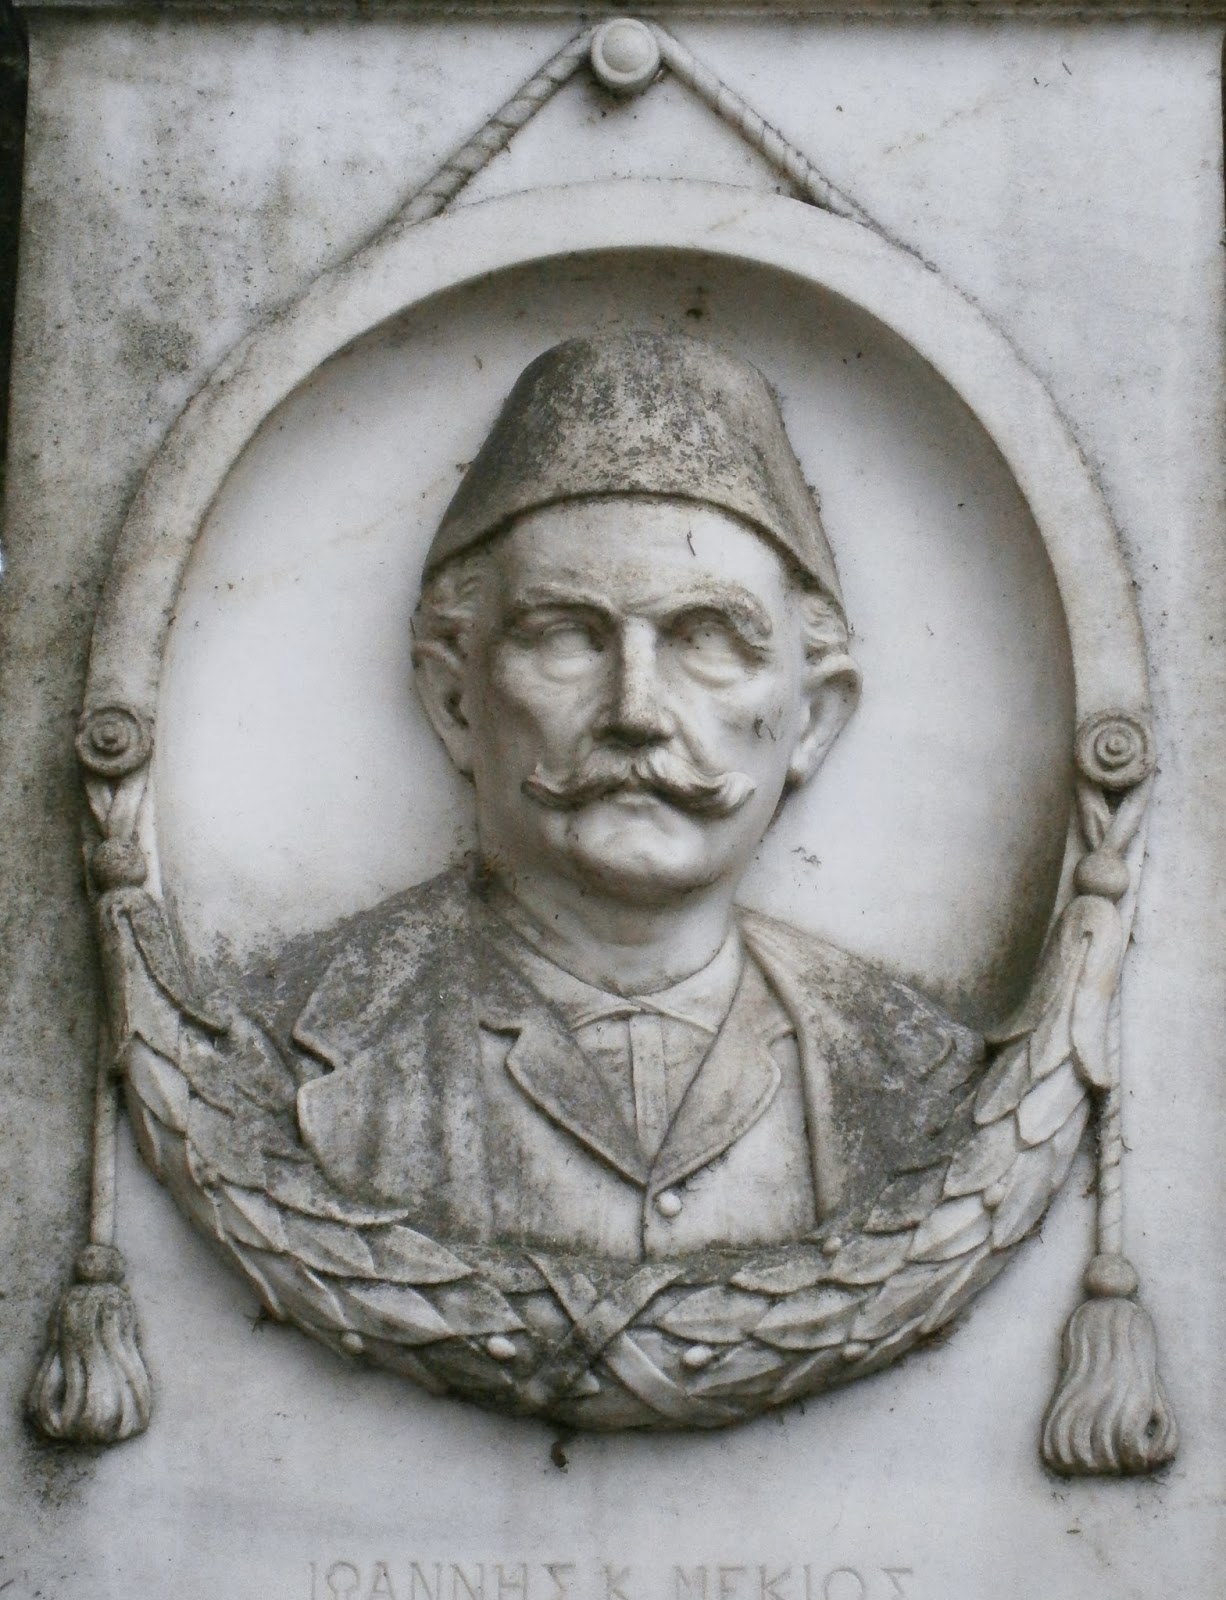 το μνημείο του Ιωάννη Μέκιου στο Α΄ Δημοτικό Νεκροταφείο Ιωαννίνων